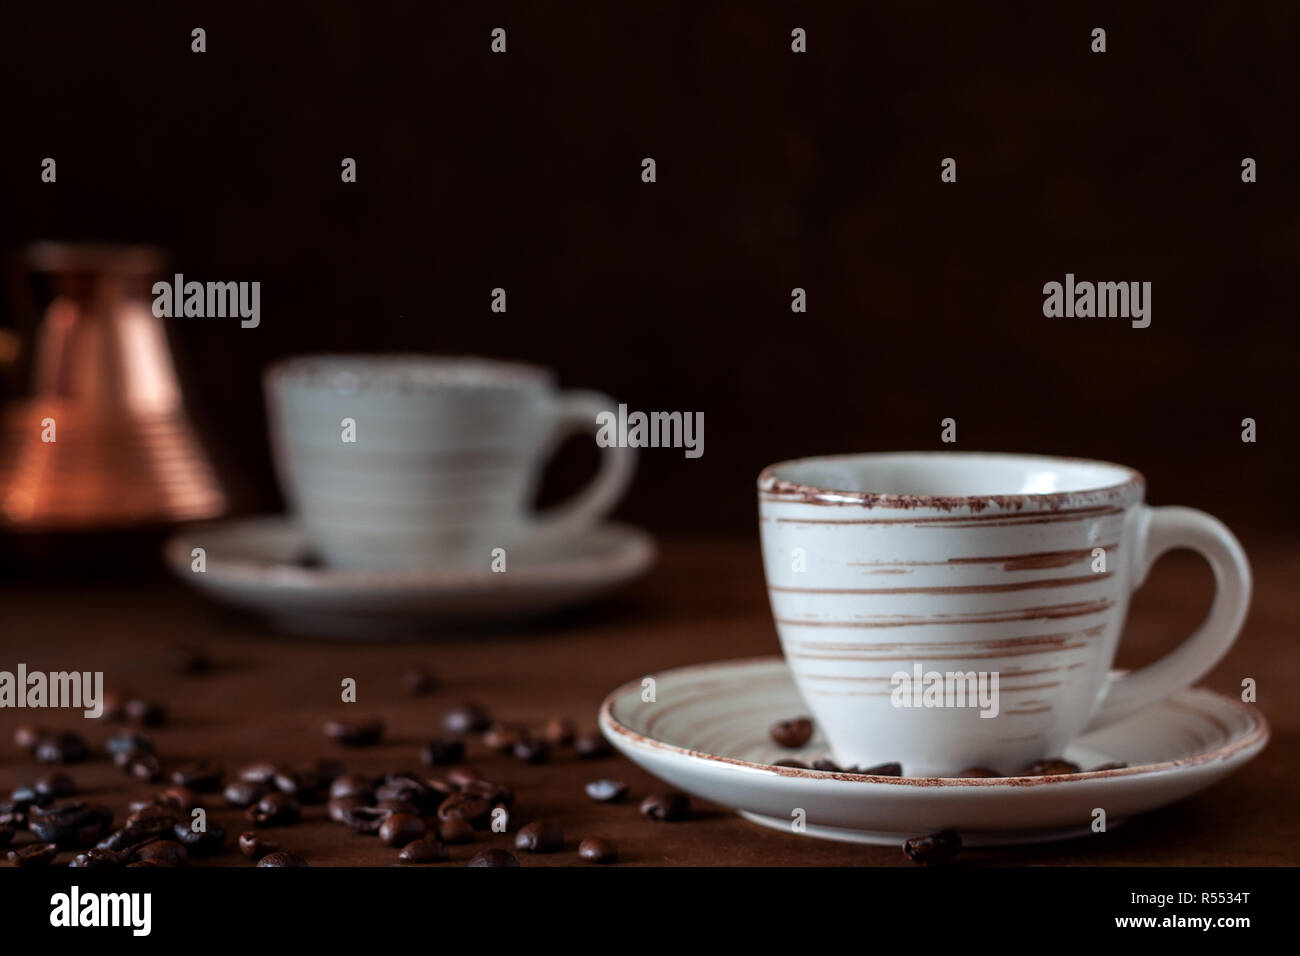 Auf Dem Tisch Stehen Zwei Kaffeetassen Und Ein Turke Mit Gebruhtem Kaffee Stockfotografie Alamy